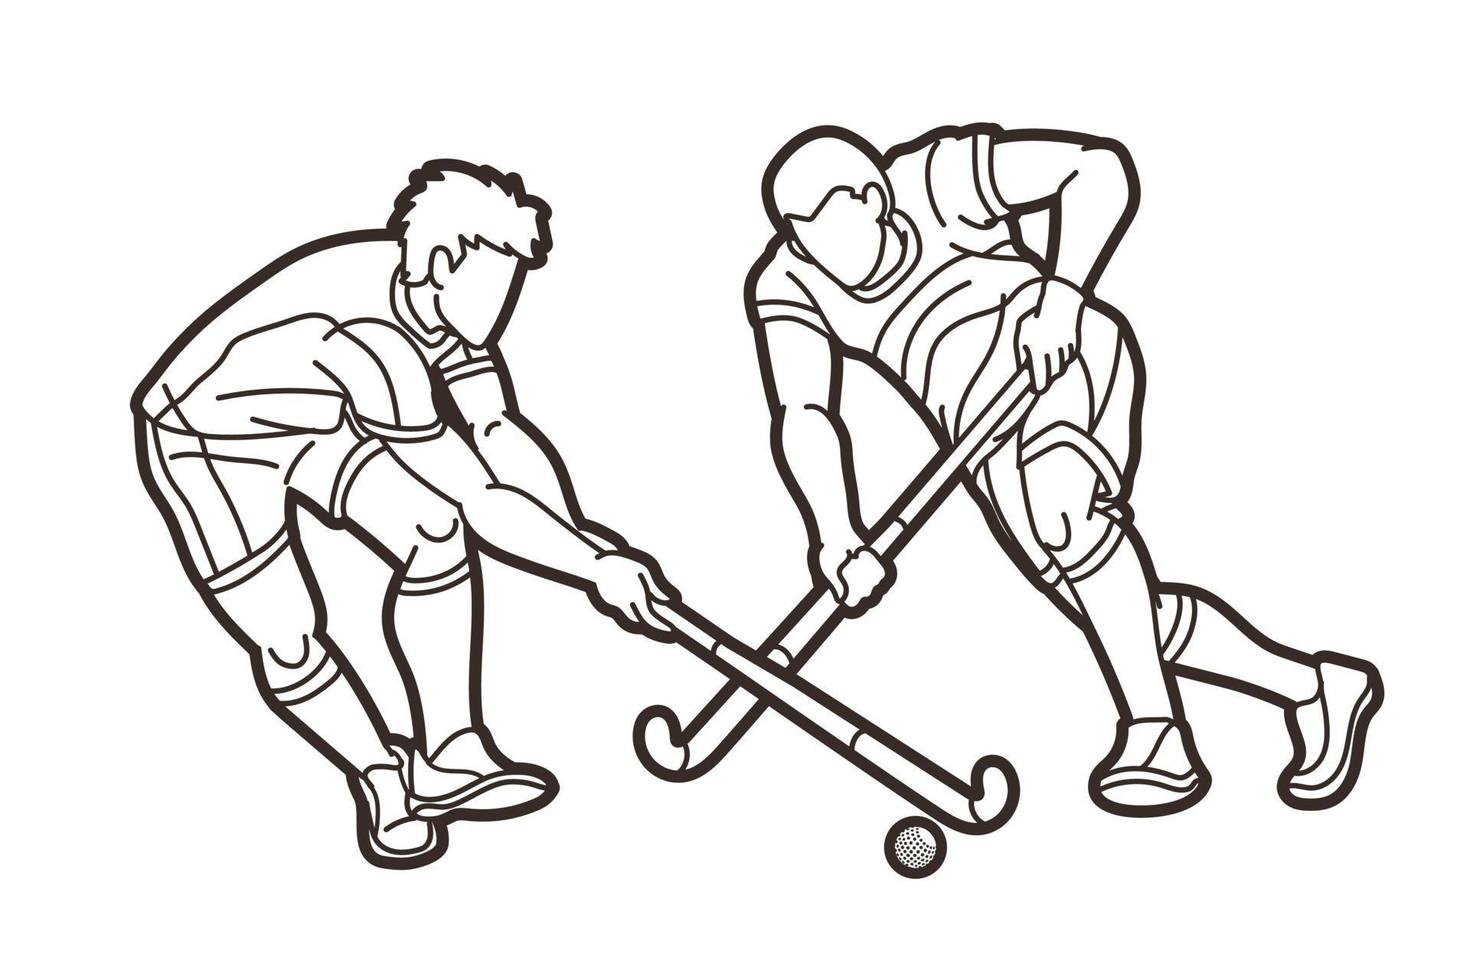 schema campo hockey sport maschio Giocatori vettore